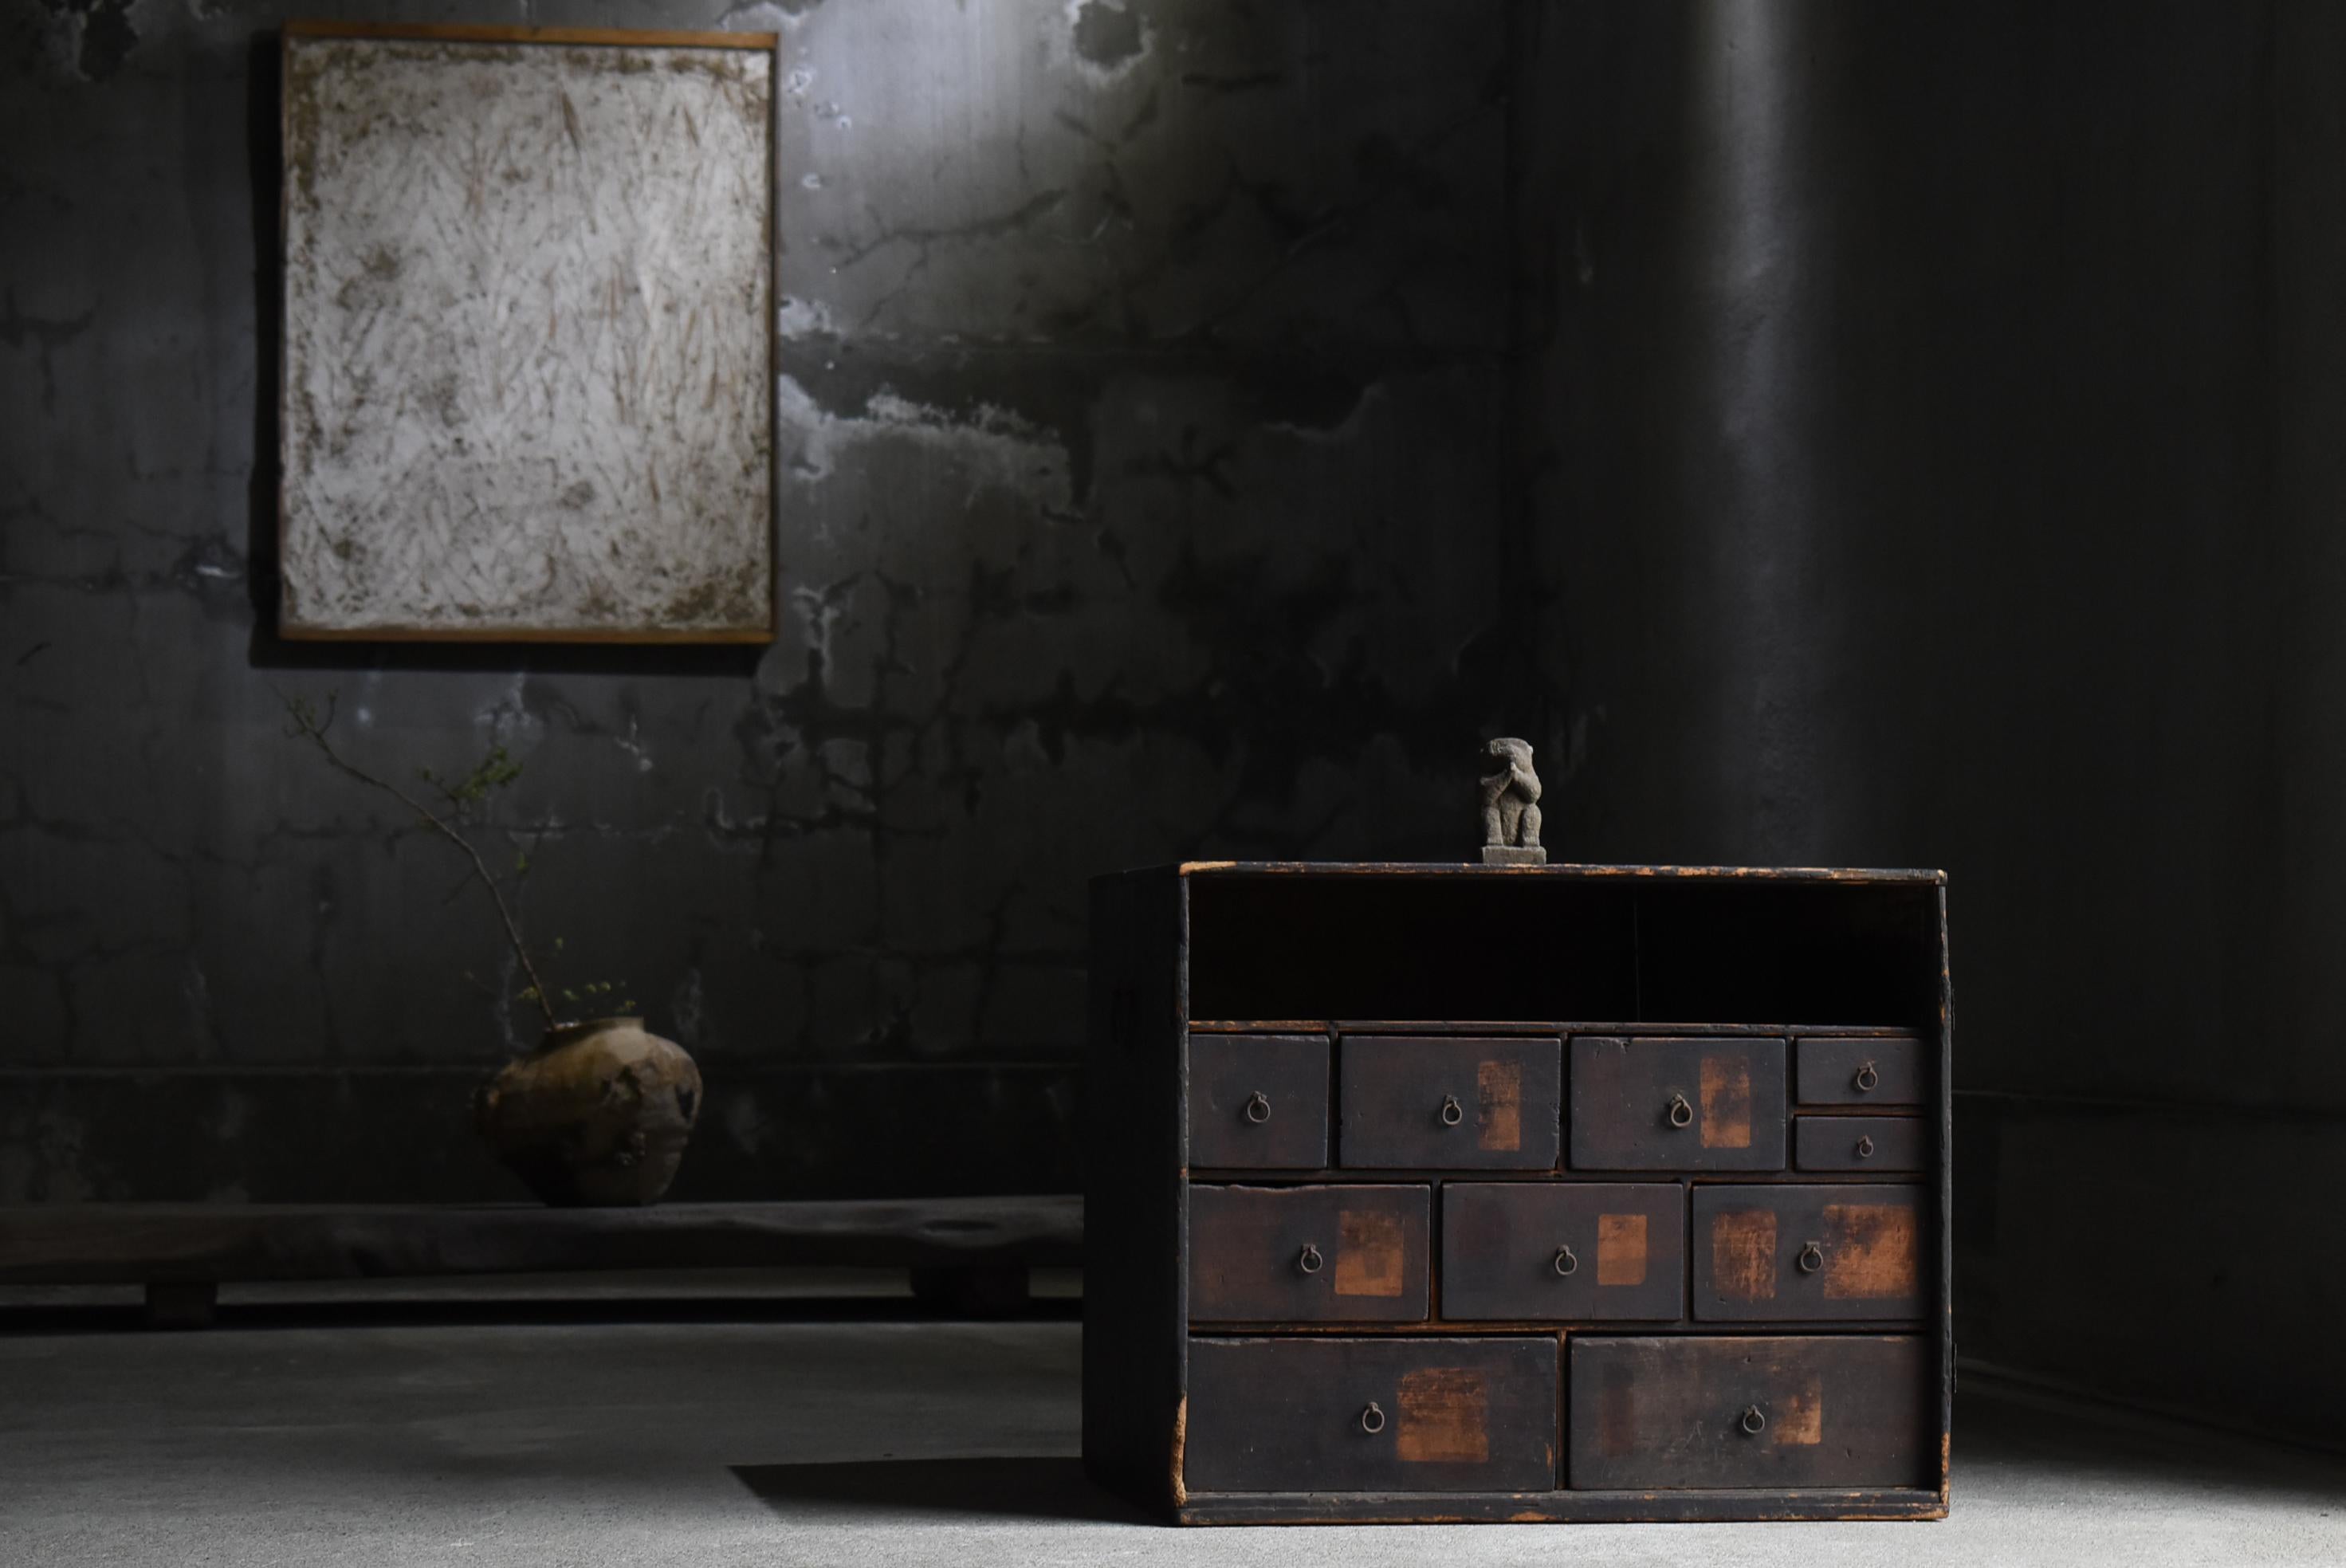 Sehr alte japanische Schubladenlagerung.
Sie stammt aus der Meiji-Zeit (1860-1900).
Er ist aus Zedernholz gefertigt.

Das Design ist einfach und schlank.
Es ist das Nonplusultra der Einfachheit und ein sehr schönes Möbelstück.

Das Ablagefach